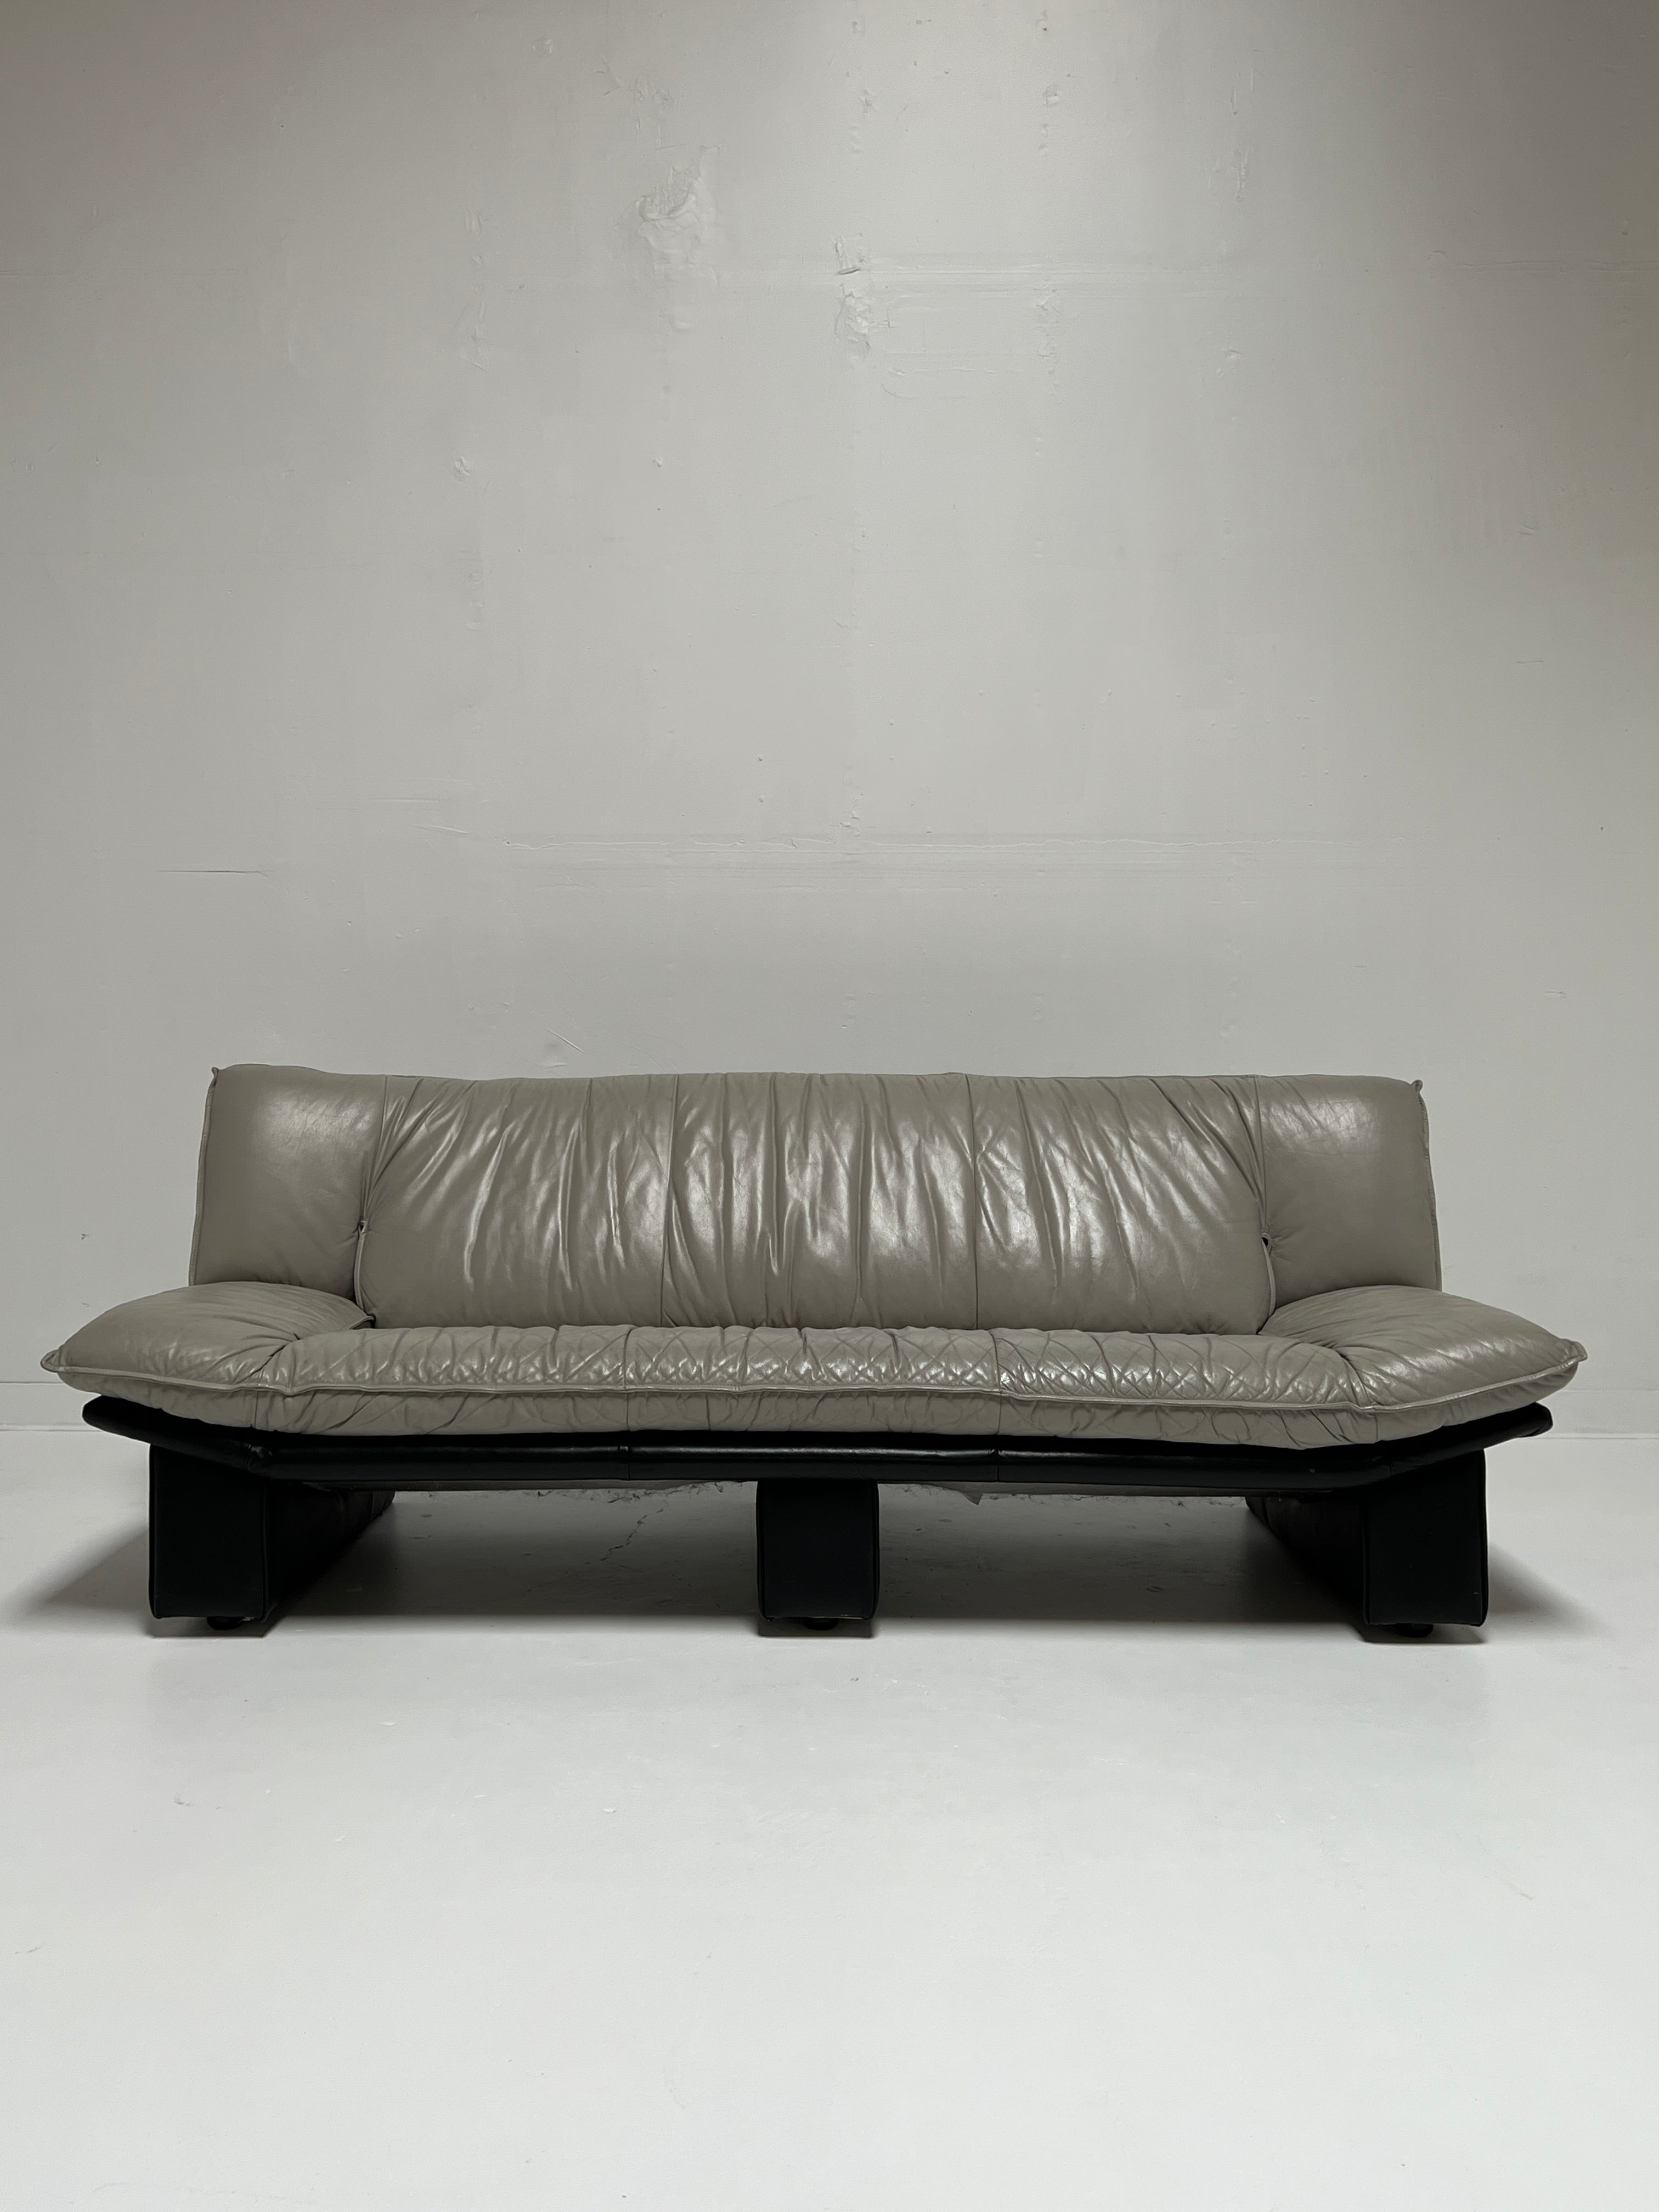 Italian Nicoletti Style Leather Sofa